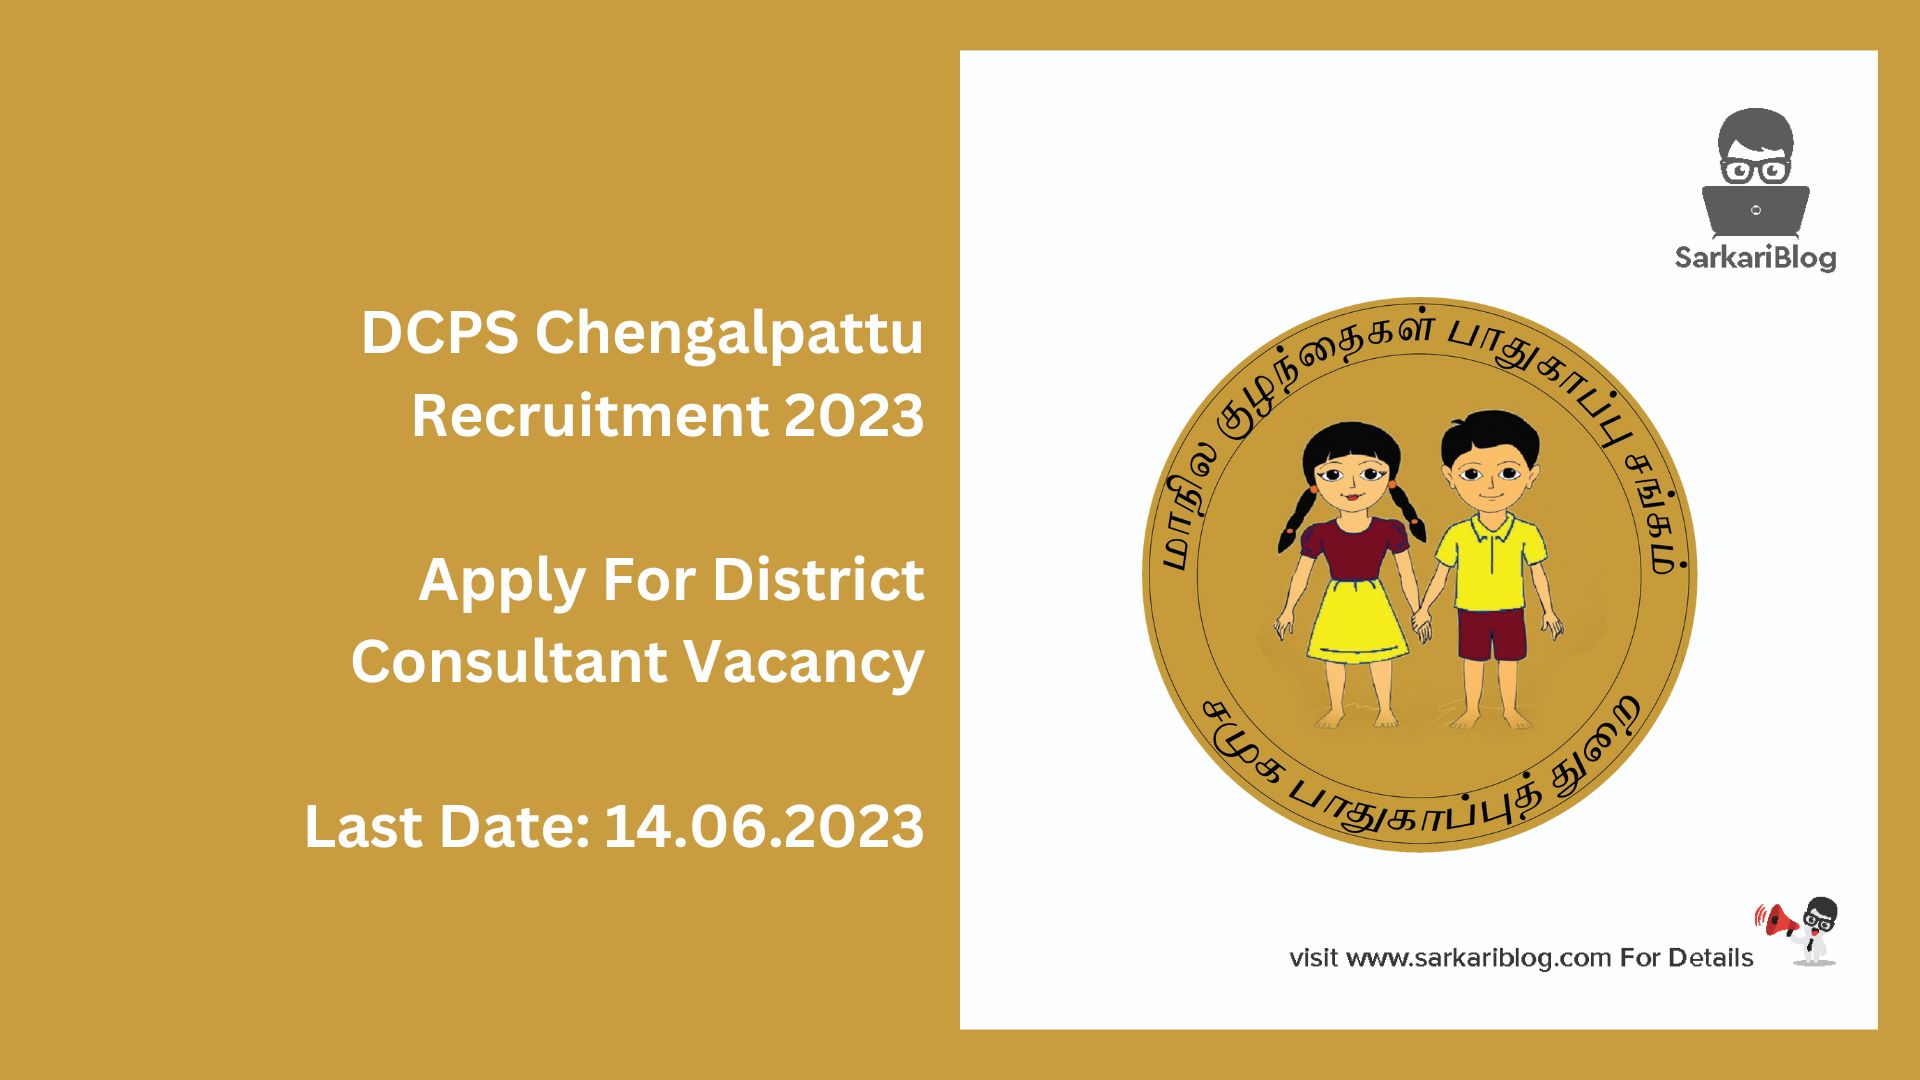 DCPS Chengalpattu Recruitment 2023